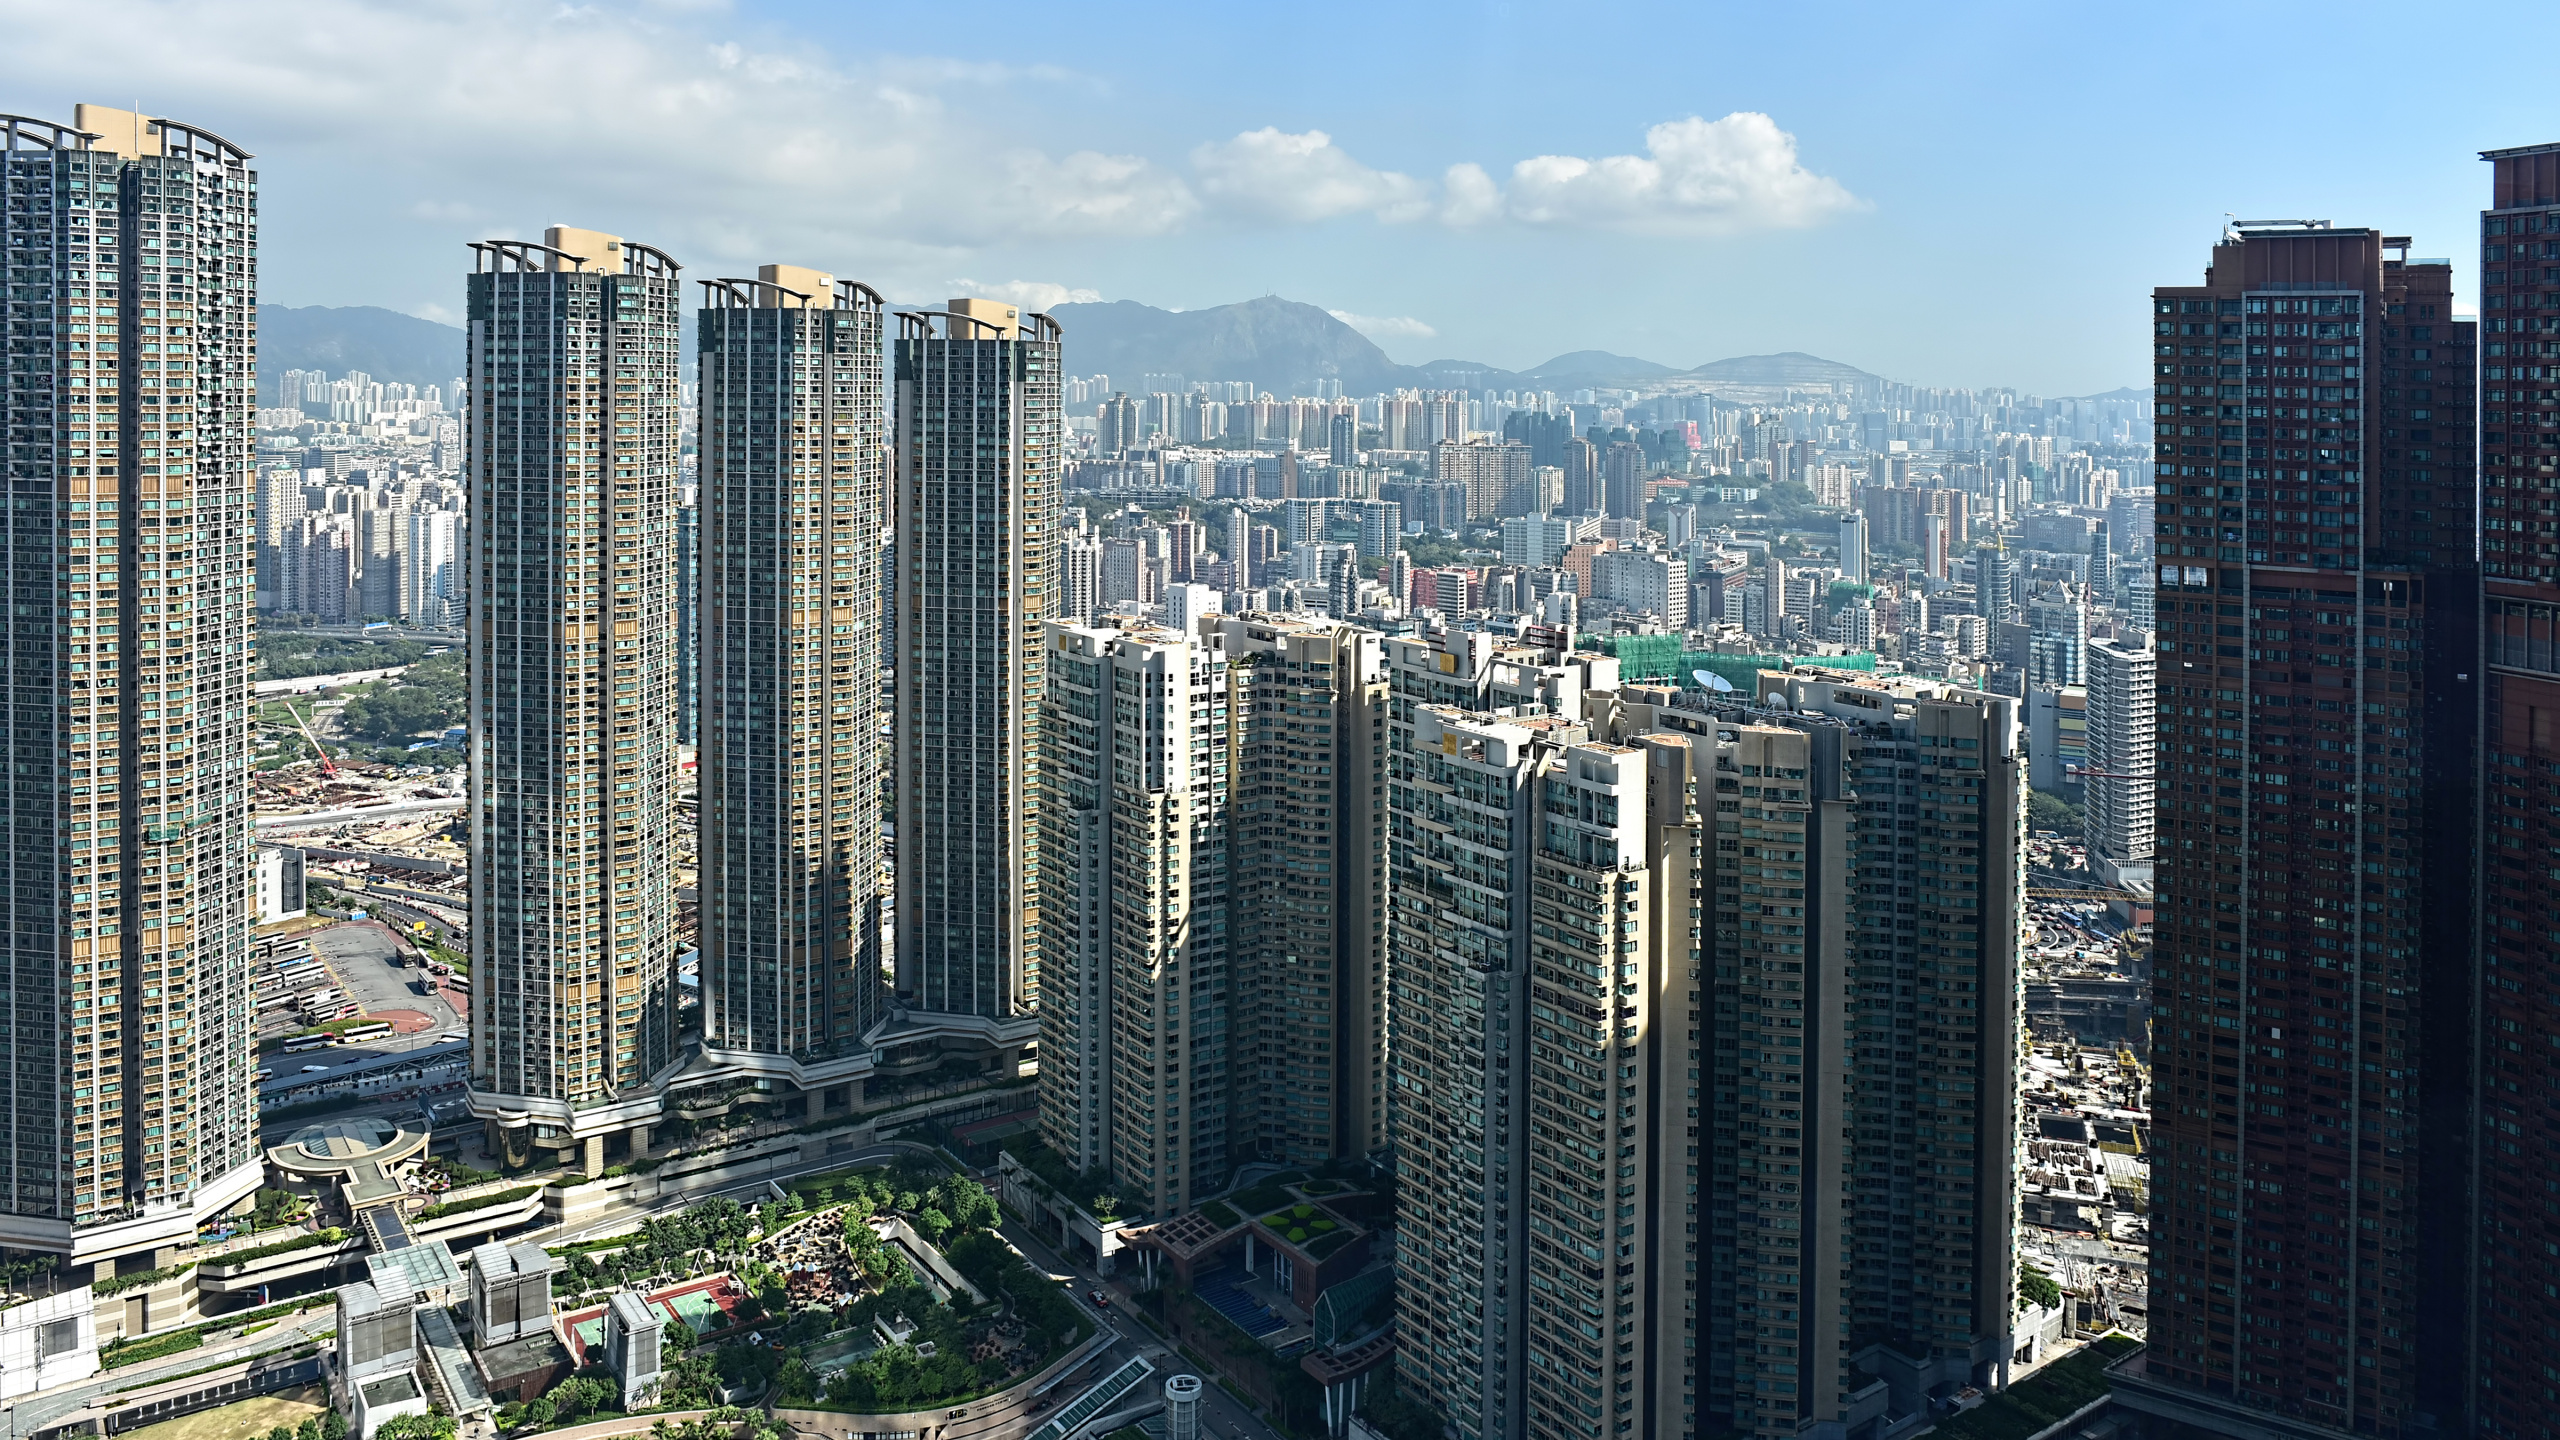 香港, 城市, 大都会, 城市景观, 塔块 壁纸 2560x1440 允许